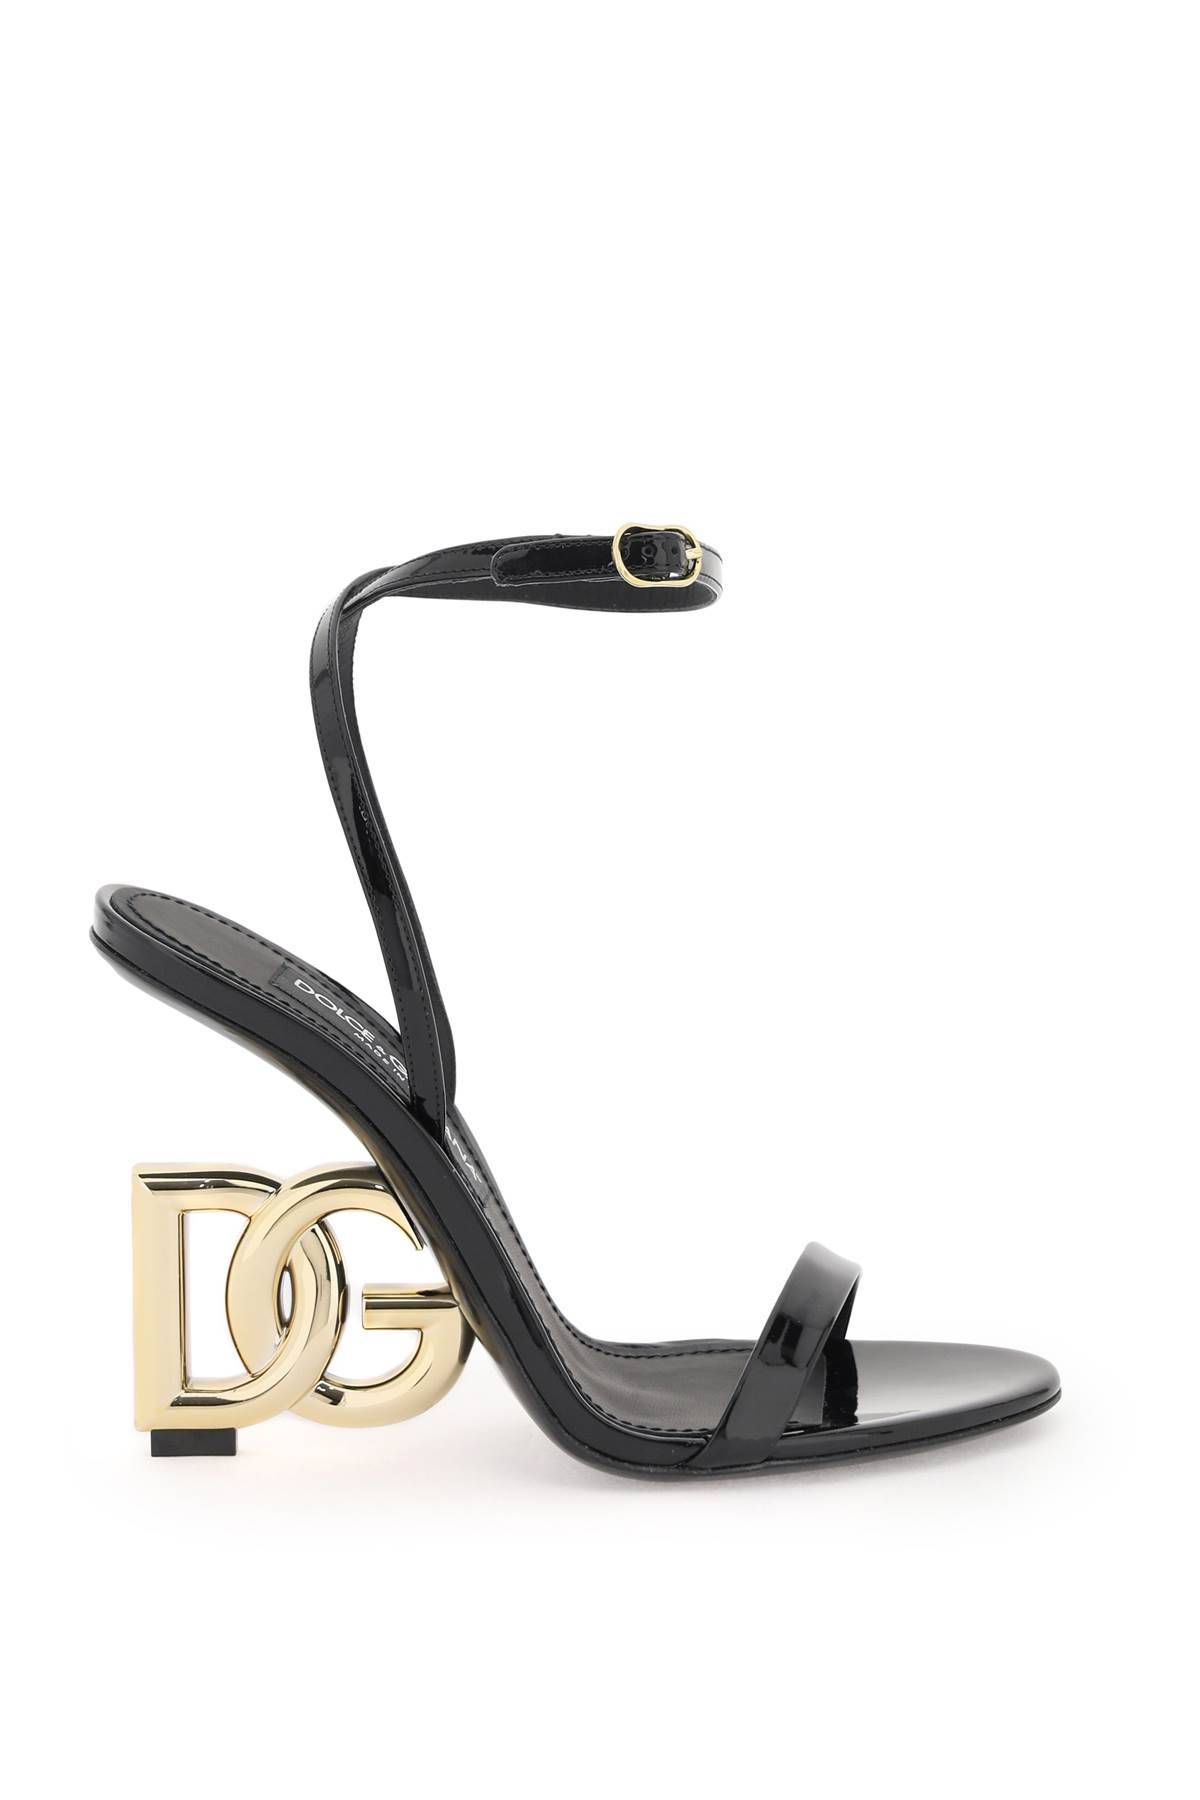 Dolce & Gabbana DOLCE & GABBANA sandals with dg heel